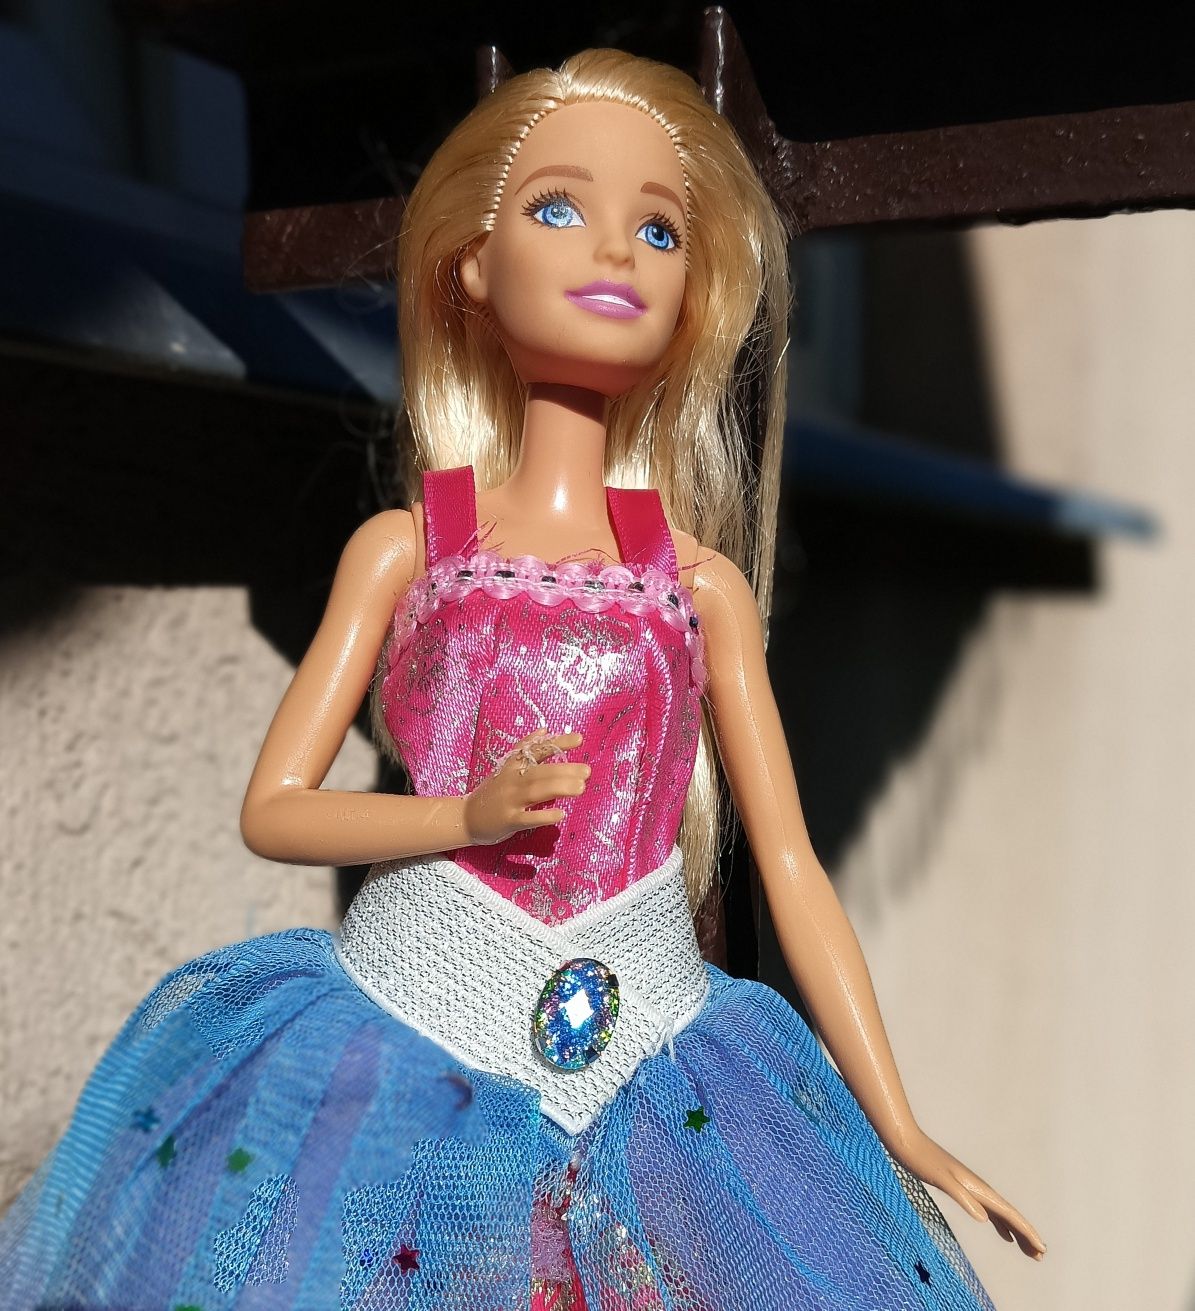 Długa spódnica balowa dla lalek Barbie